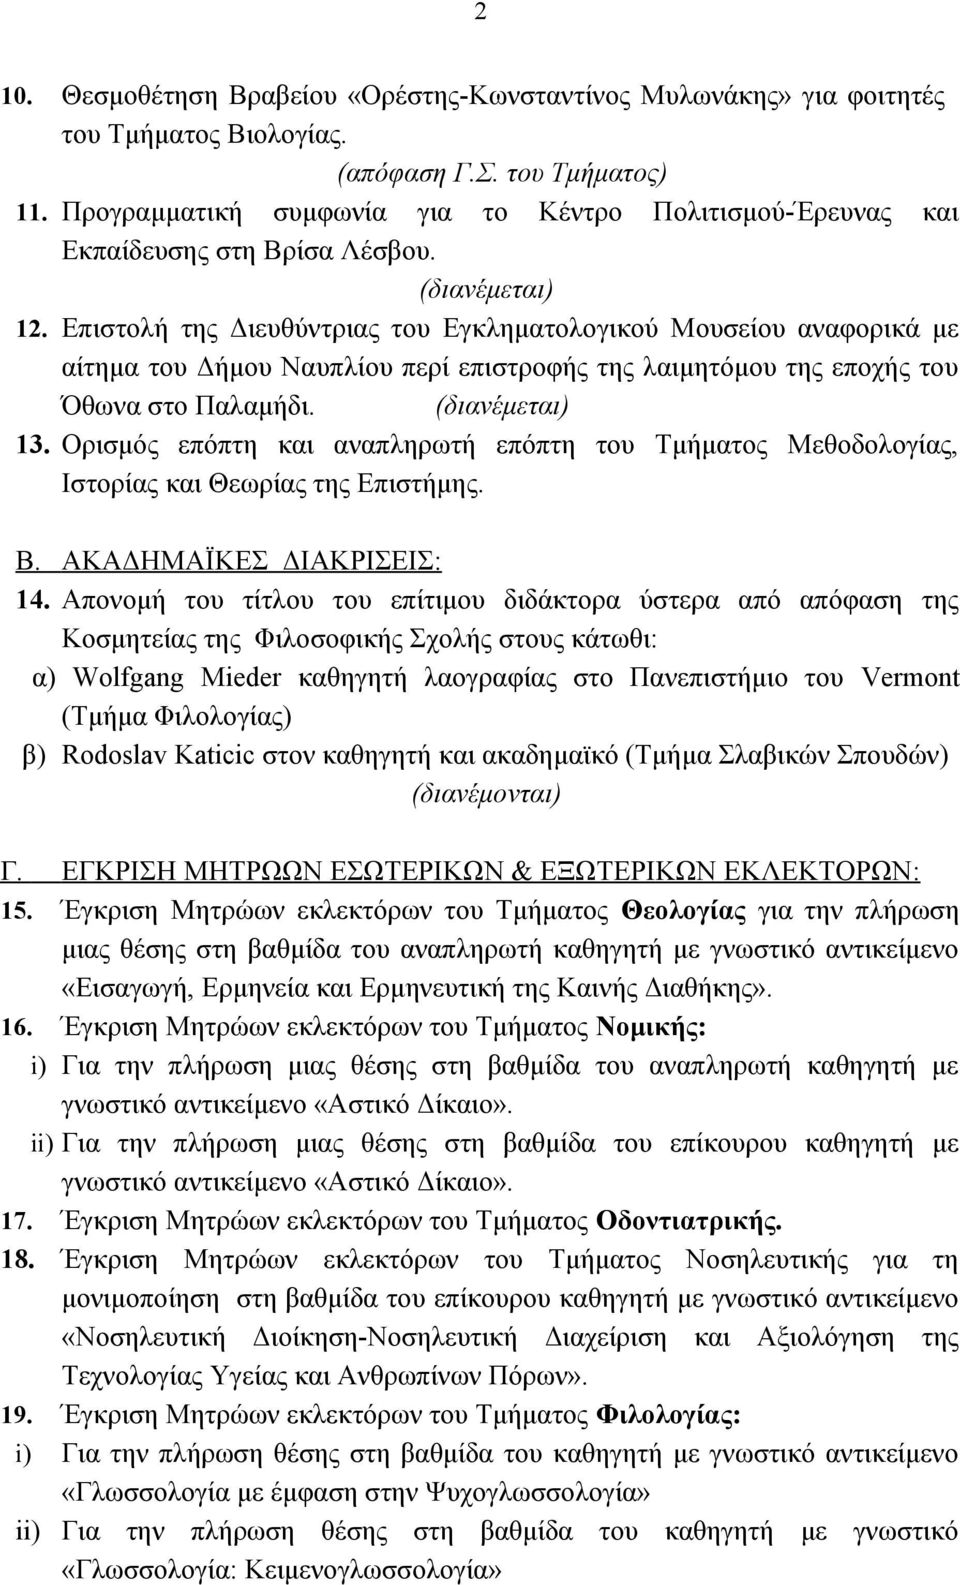 Επιστολή της Διευθύντριας του Εγκληματολογικού Μουσείου αναφορικά με αίτημα του Δήμου Ναυπλίου περί επιστροφής της λαιμητόμου της εποχής του Όθωνα στο Παλαμήδι. 13.